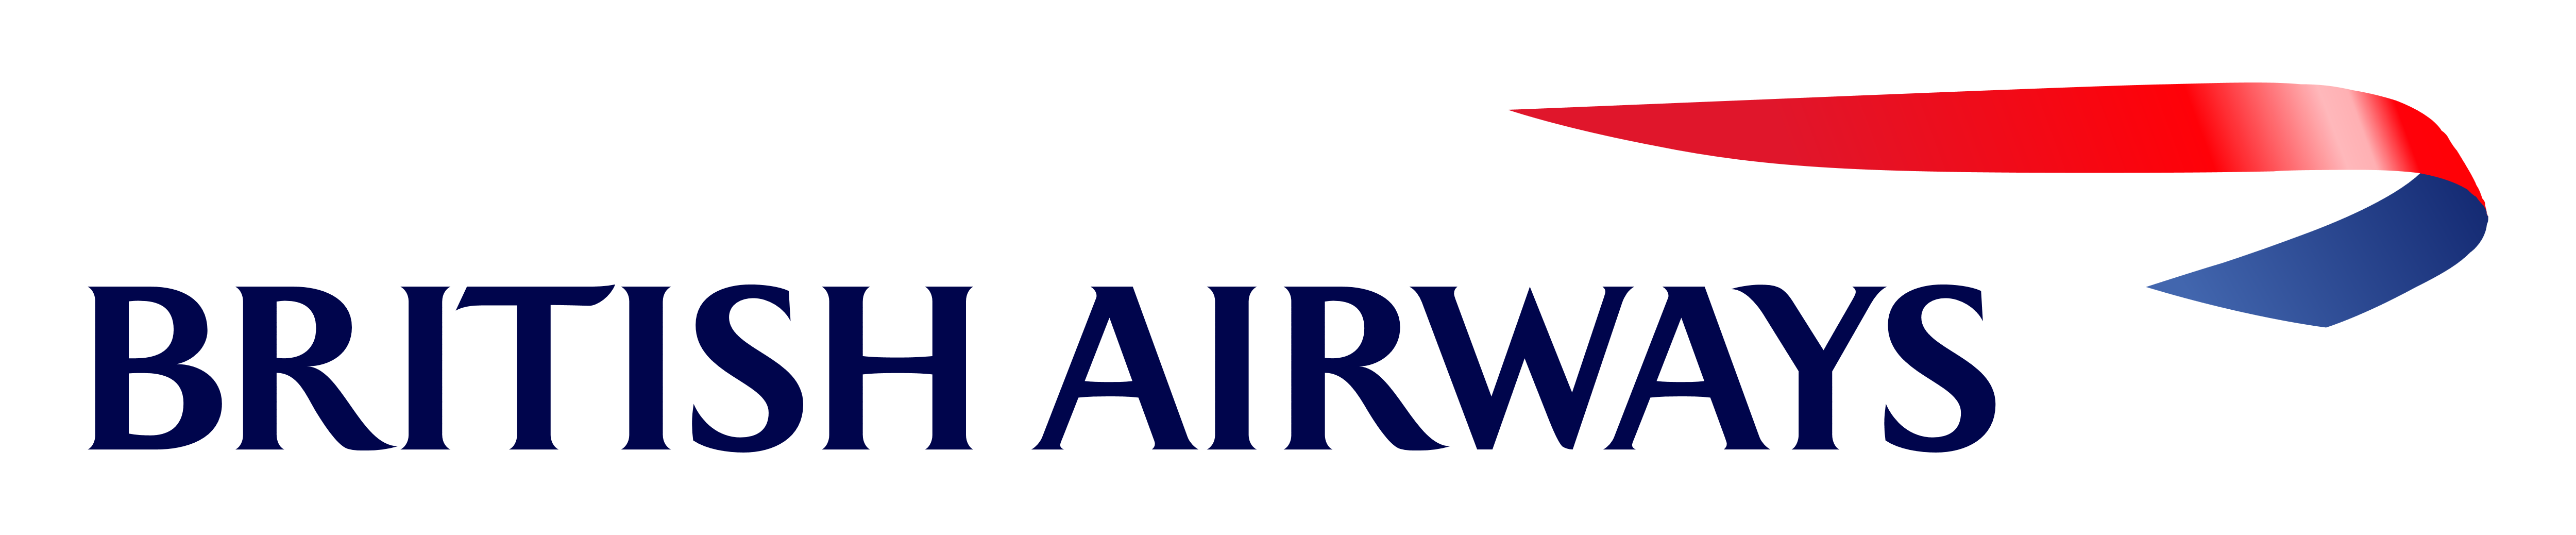 British Airways – Logos Download